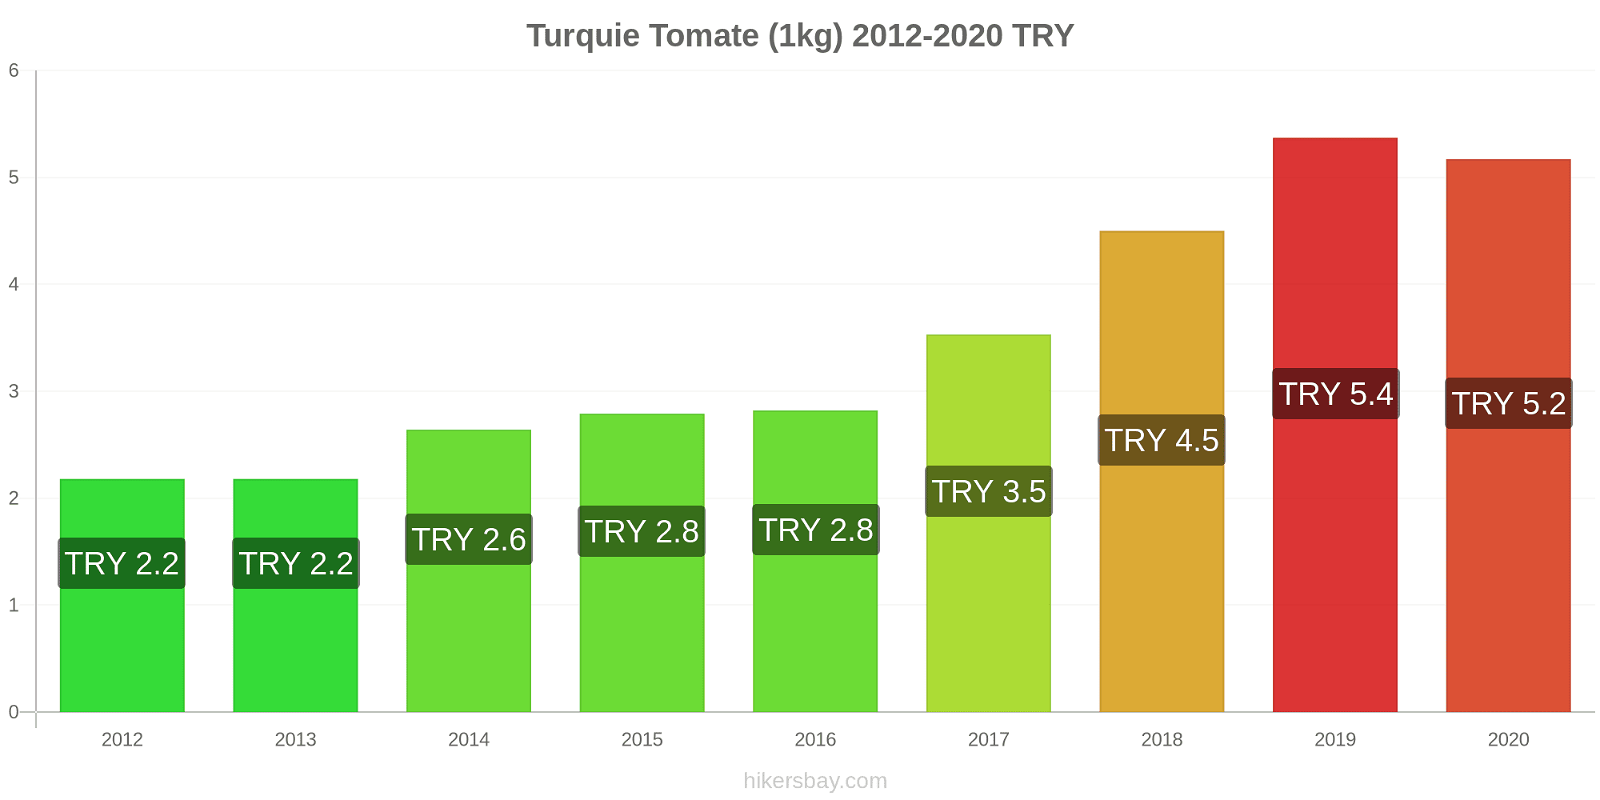 Turquie changements de prix Tomate (1kg) hikersbay.com